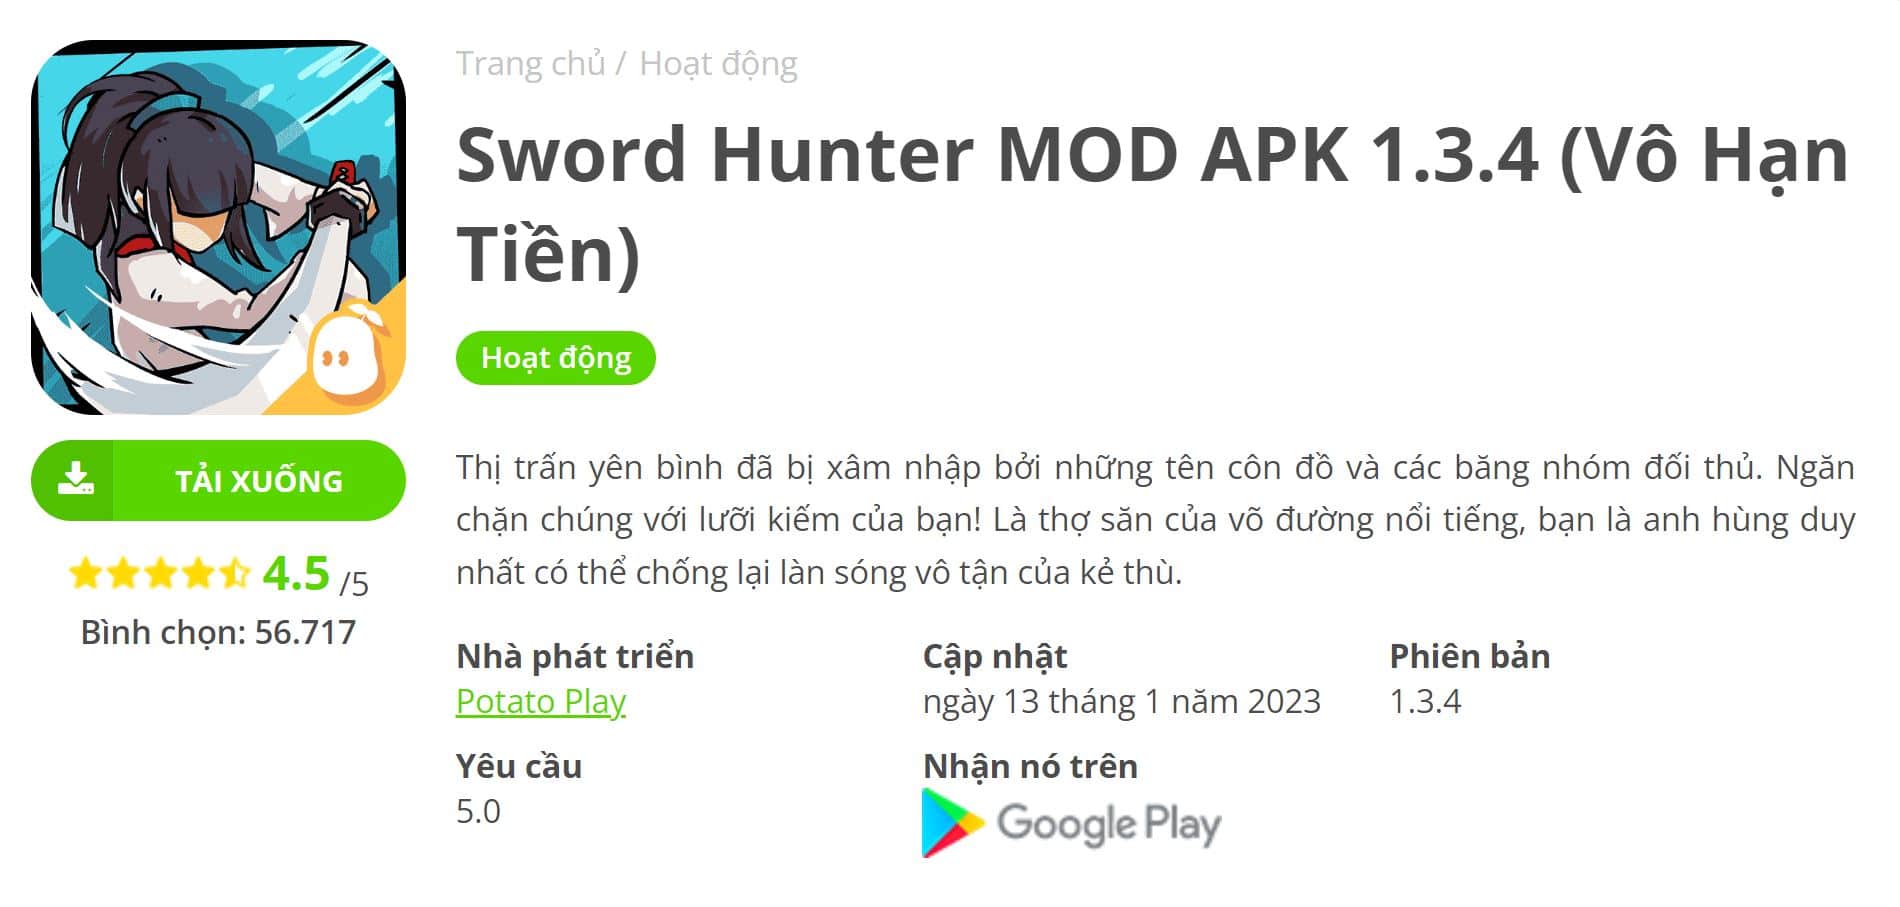 Sword Hunter MOD APK 1.3.4